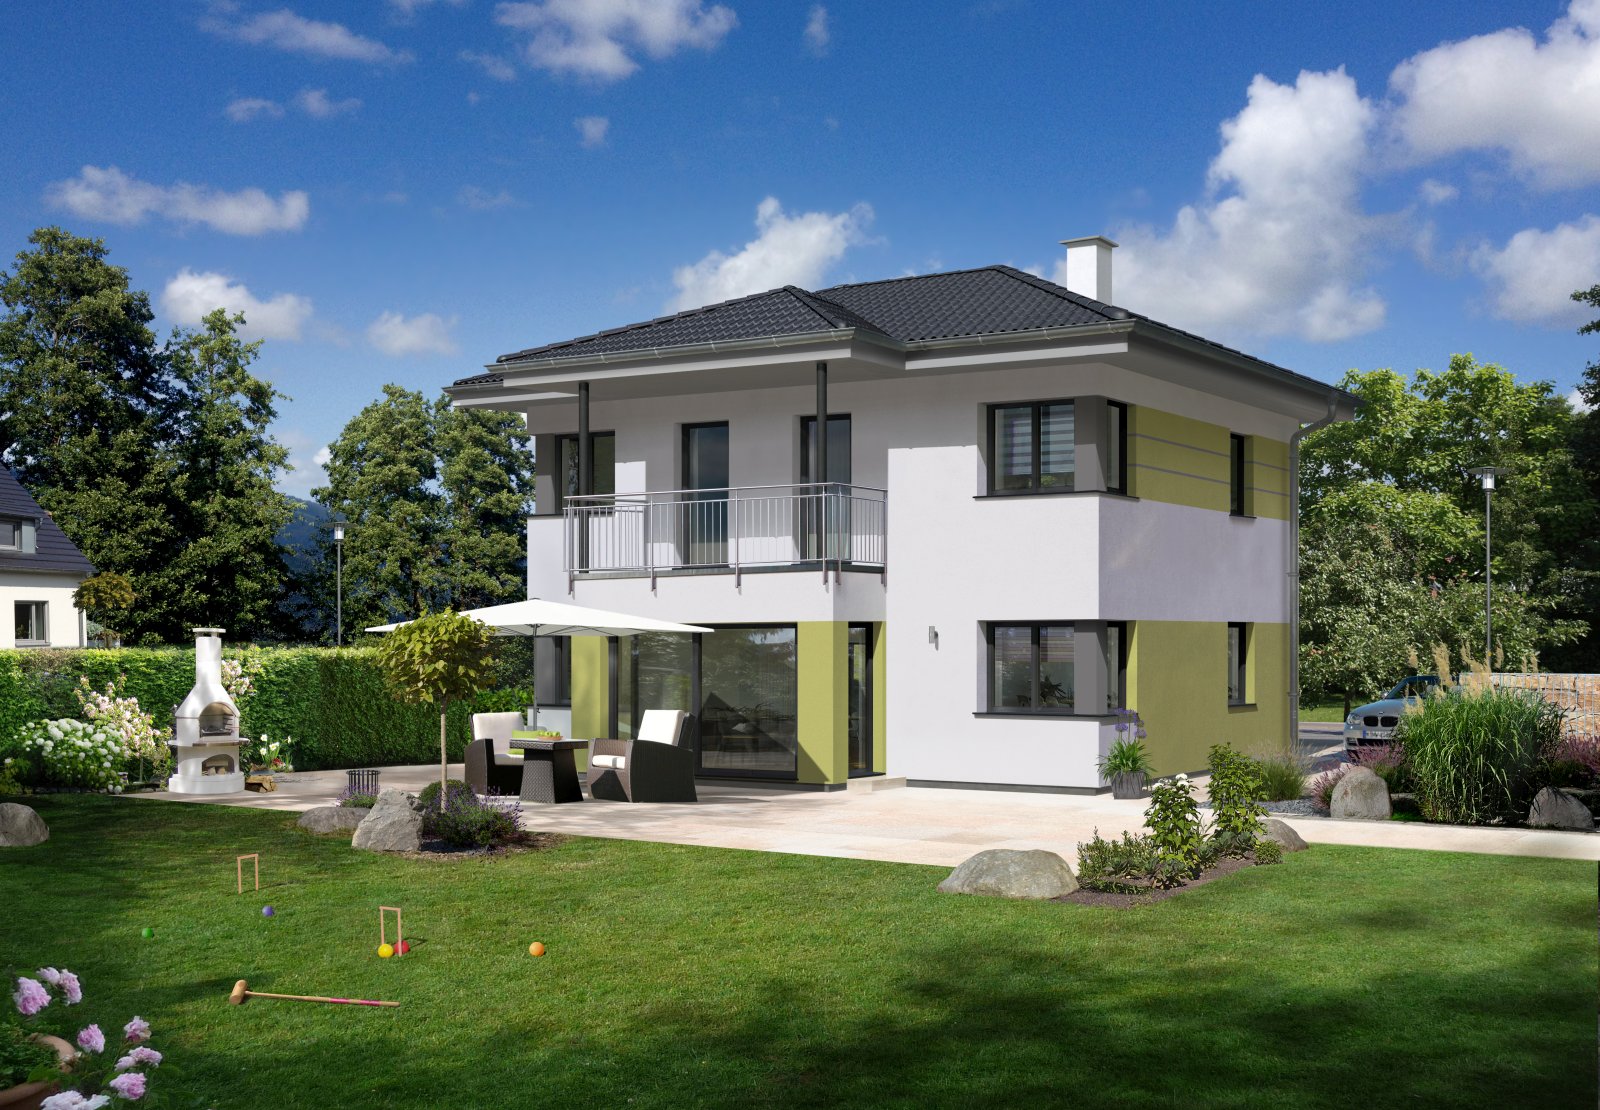 Hartl Haus Ambition 129 W: Einfamilienhaus mit Walmdach, Eckfenstern, Terrasse und Garten